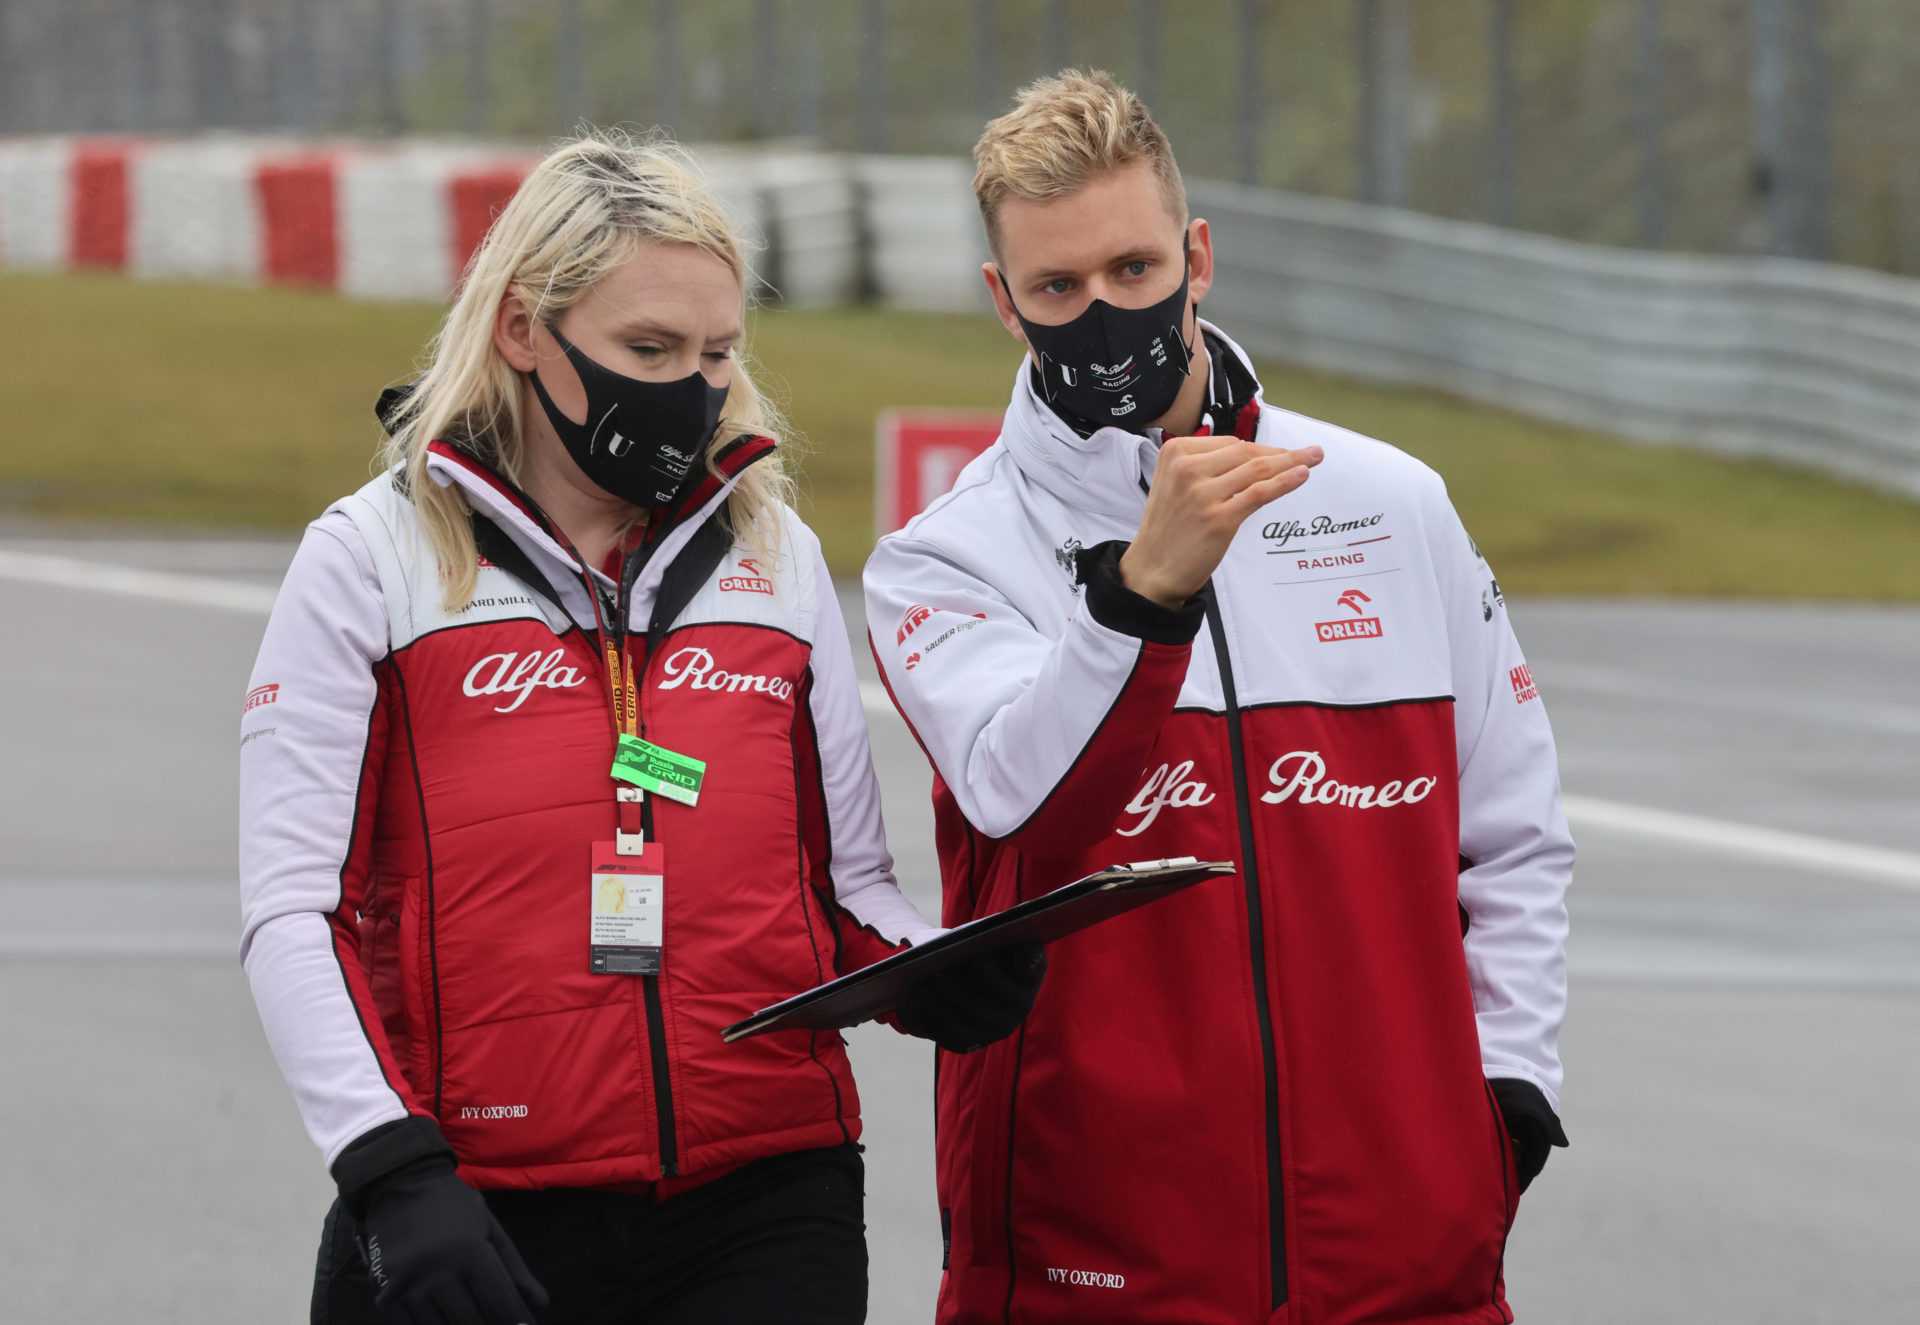 Kimi Raikkonen peut aider Mick Schumacher à «bien s'entendre» en F1, déclare son ancien coéquipier